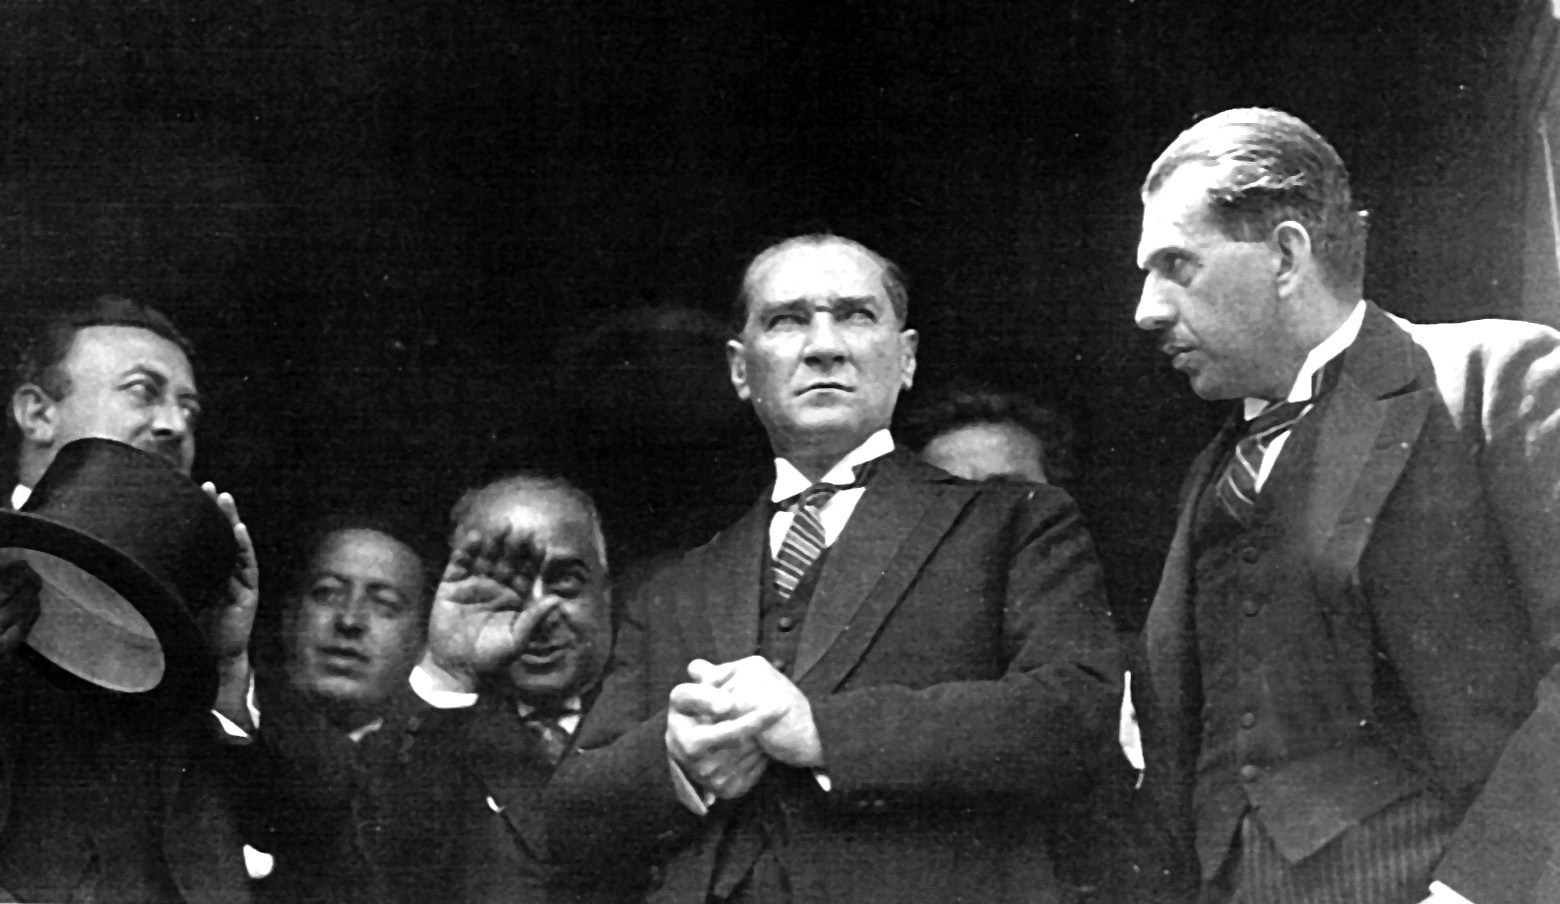 Mustafa Kemal Atatürk ou le fondateur de l'Etat turc moderne. © Revue des desux Mondes.